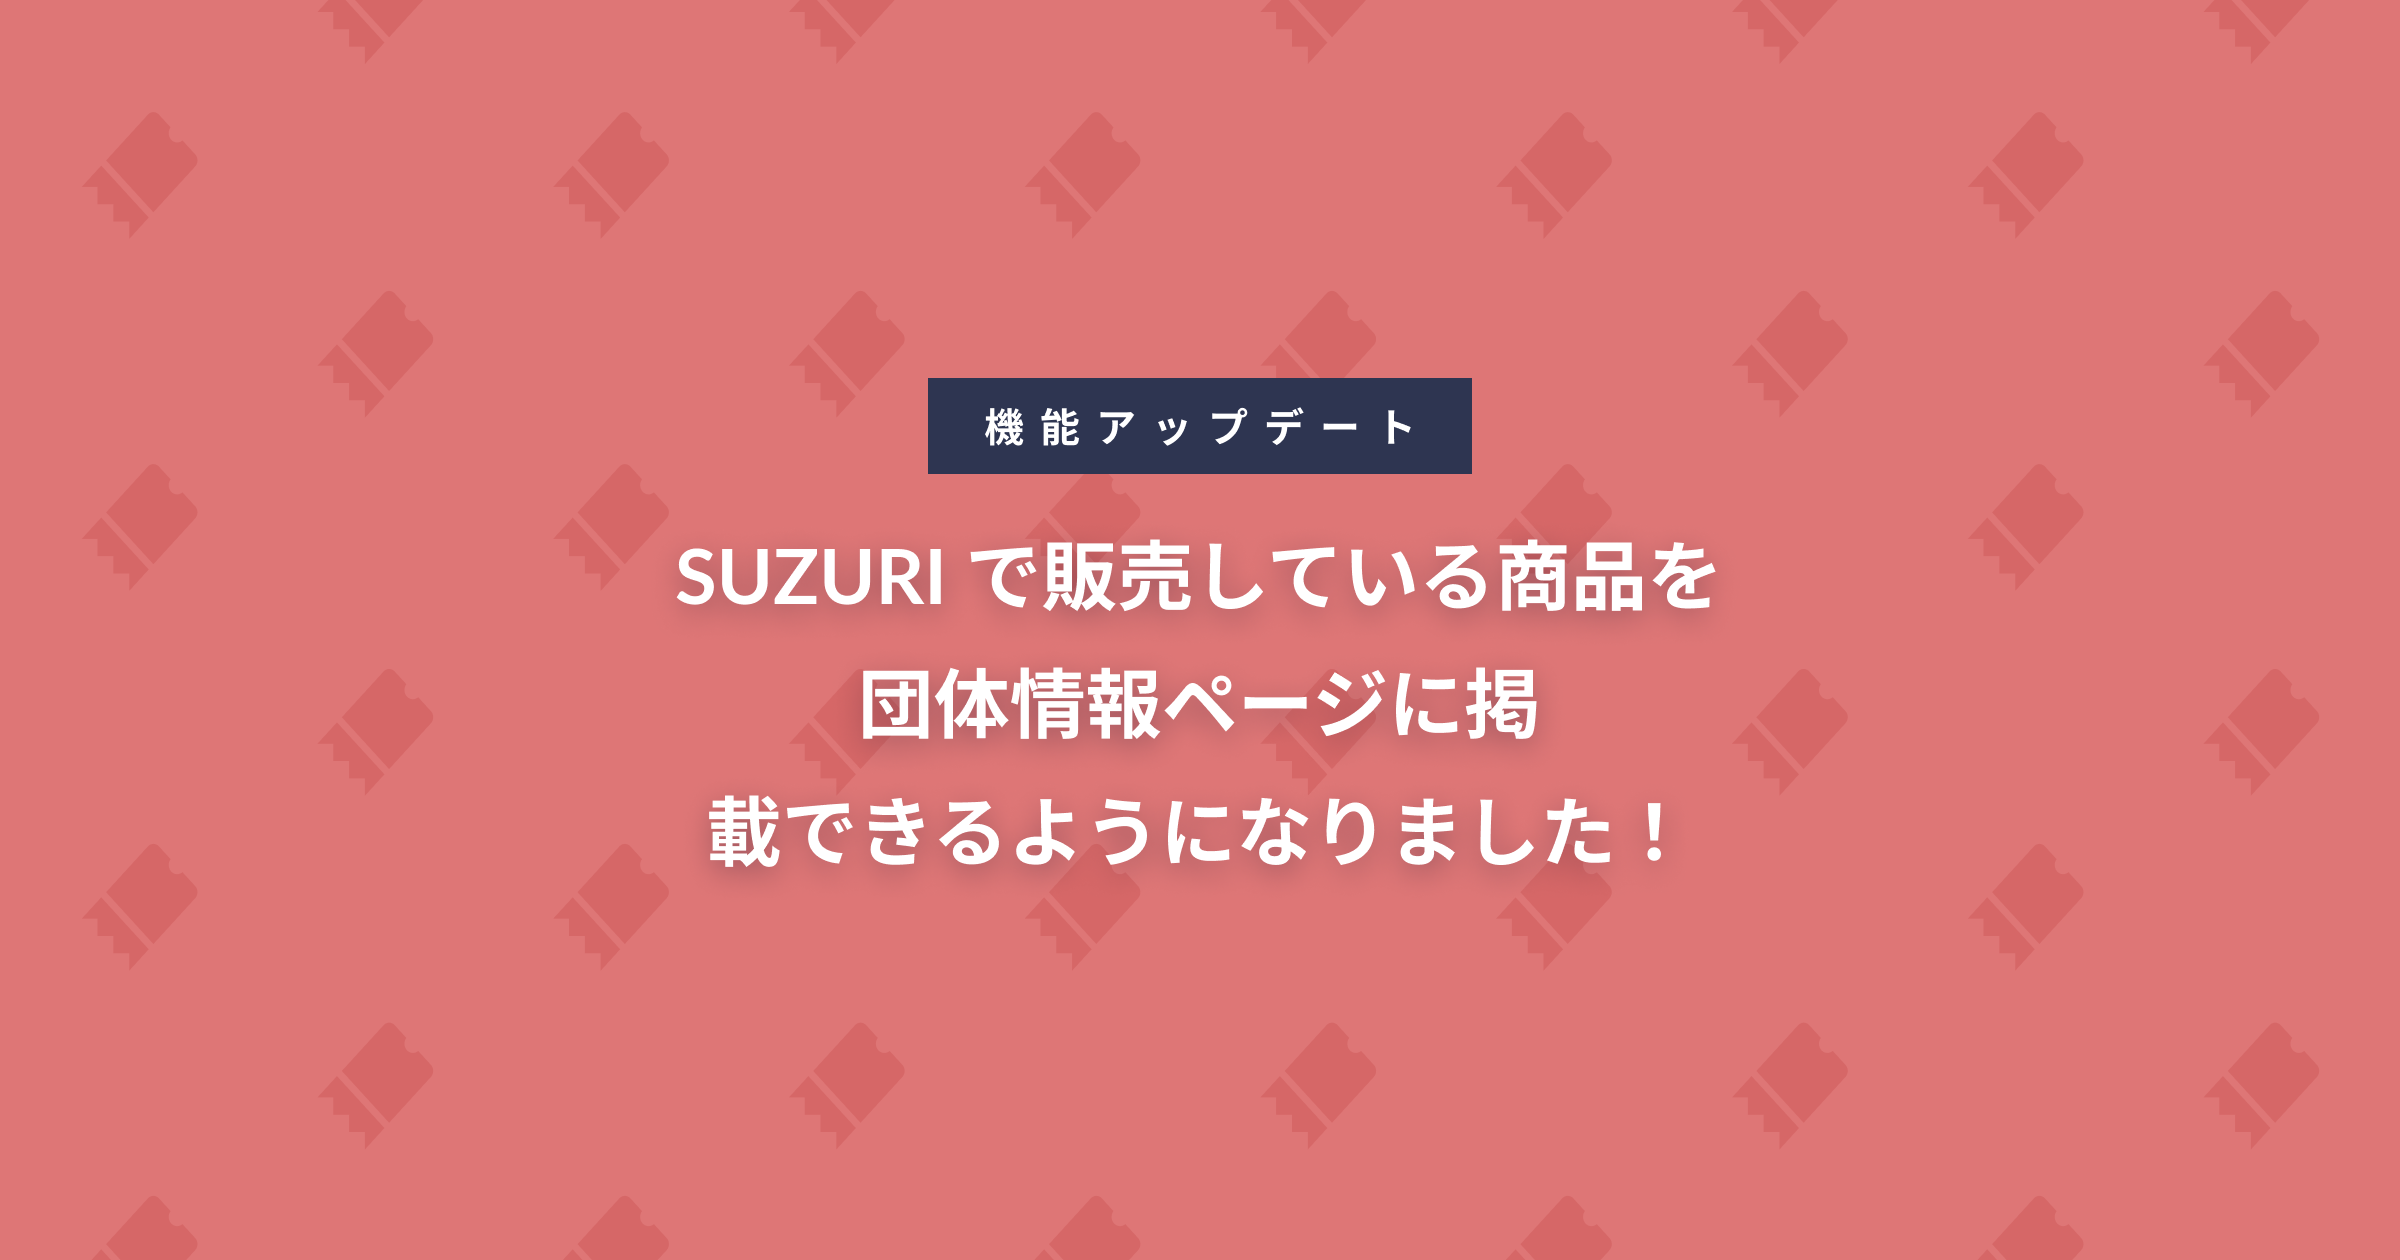 SUZURI で販売している商品を 団体情報ページに 掲載できるようになりました！